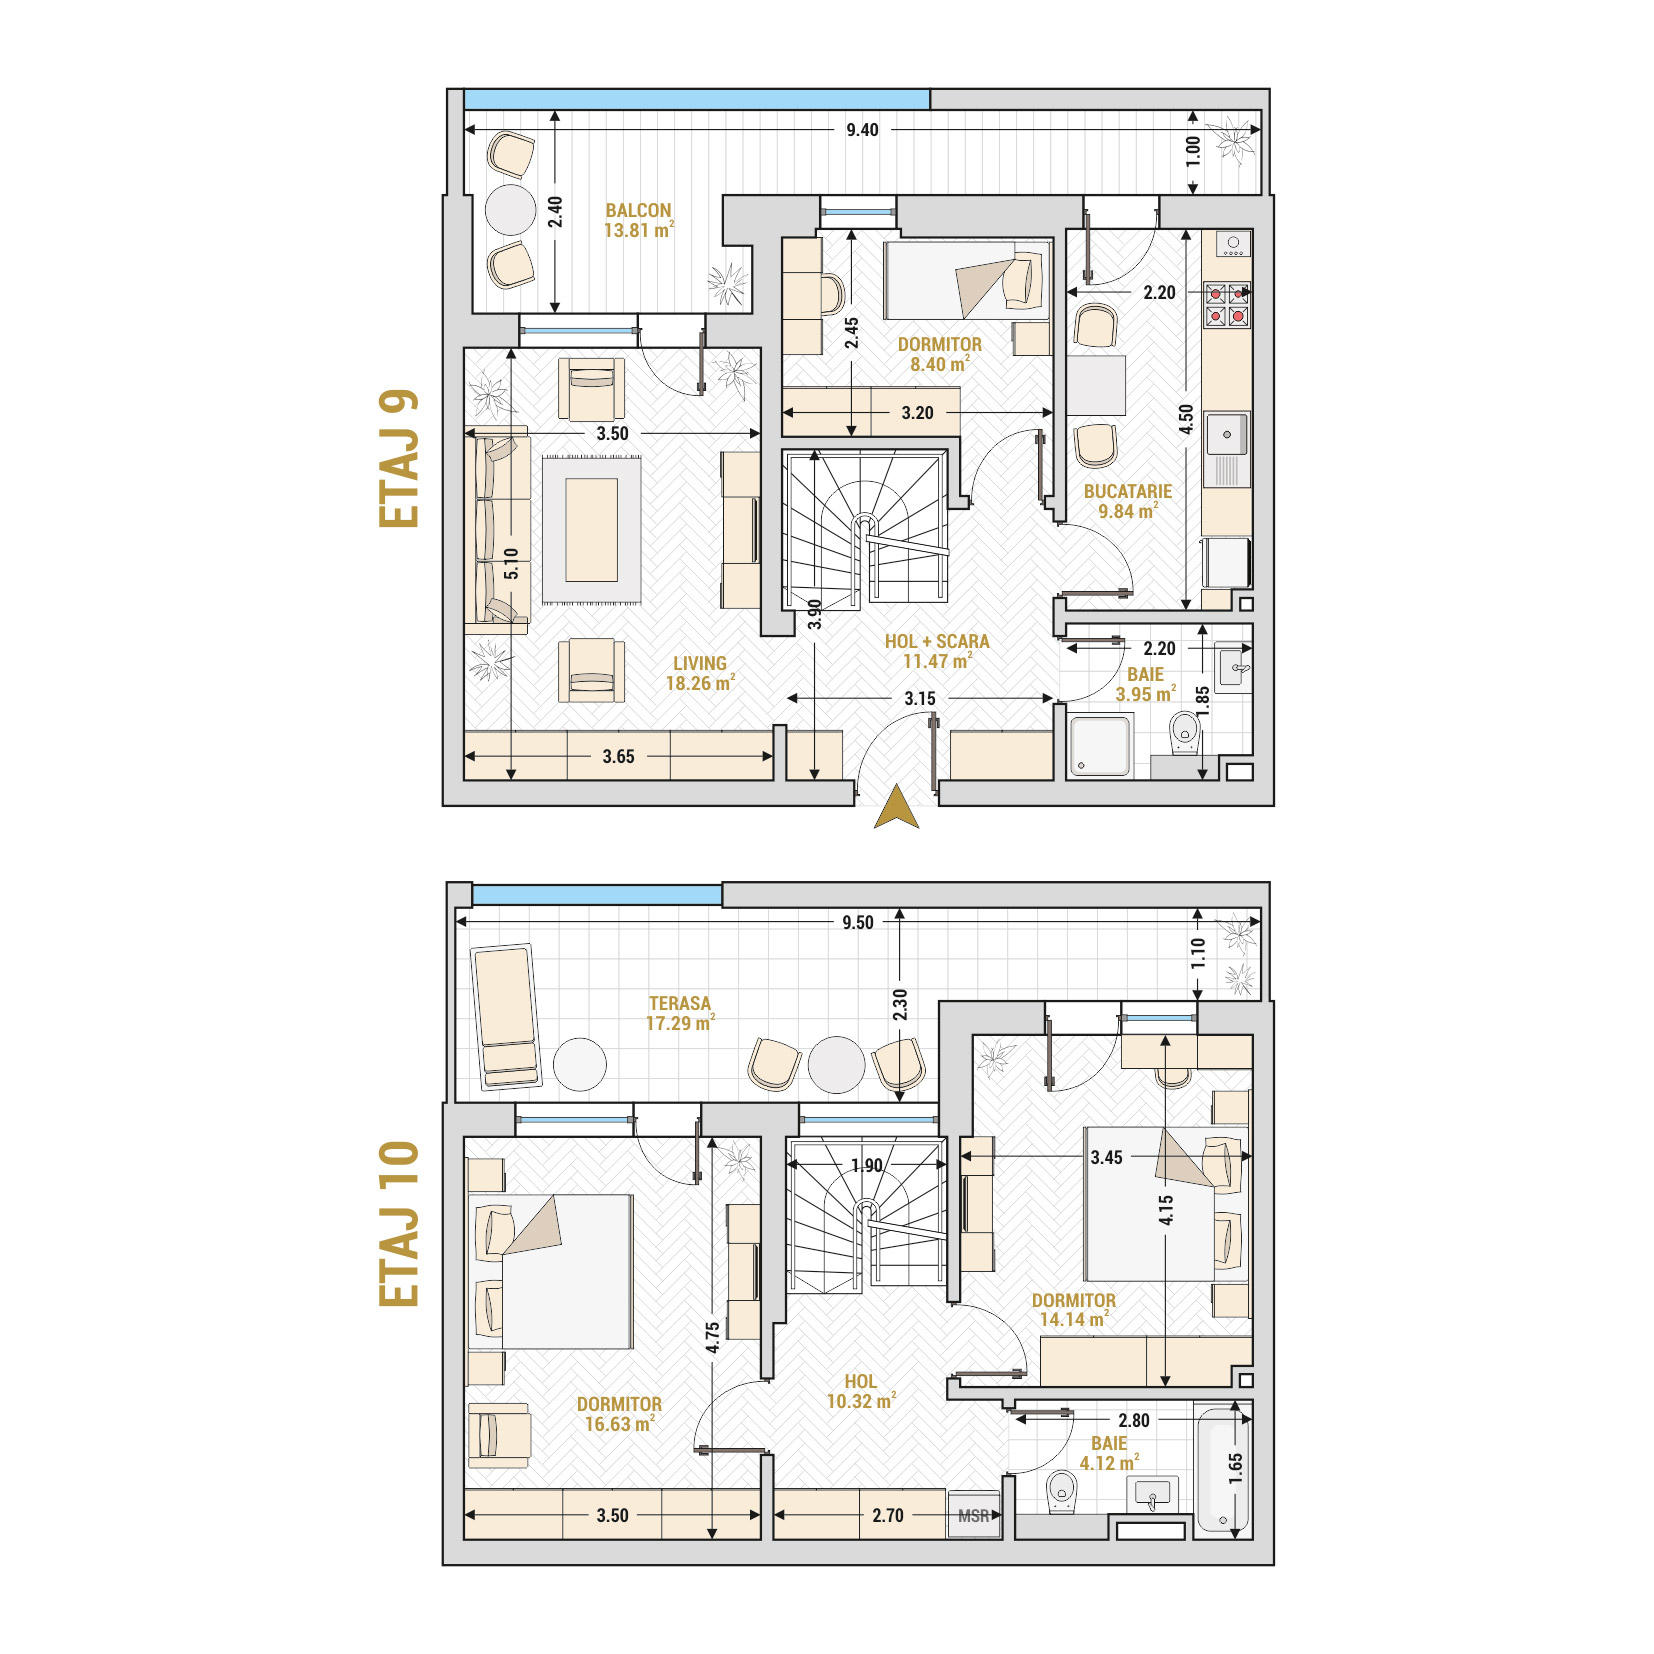 Penthouse 4 Camere Tip 2 Corp 1 - Drumul Taberei Residence - Apartamente de vanzare Bucuresti - Suprafata utila totala - 140.72 mp